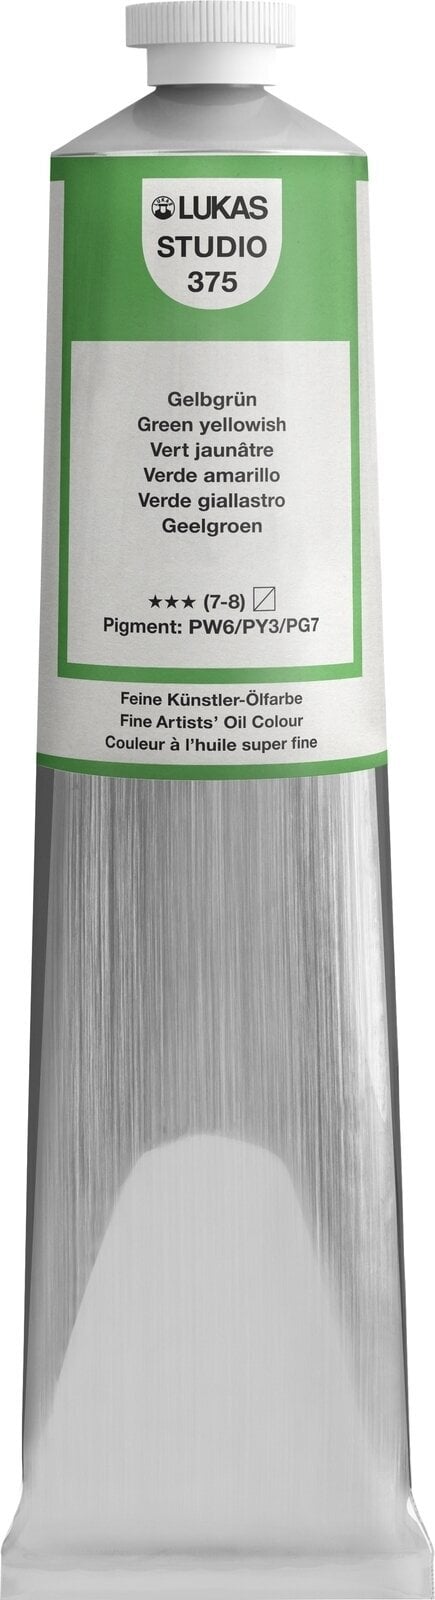 Oil colour Lukas Studio Oil Paint Aluminium Tube Oil Paint Green Yellowish 200 ml 1 pc